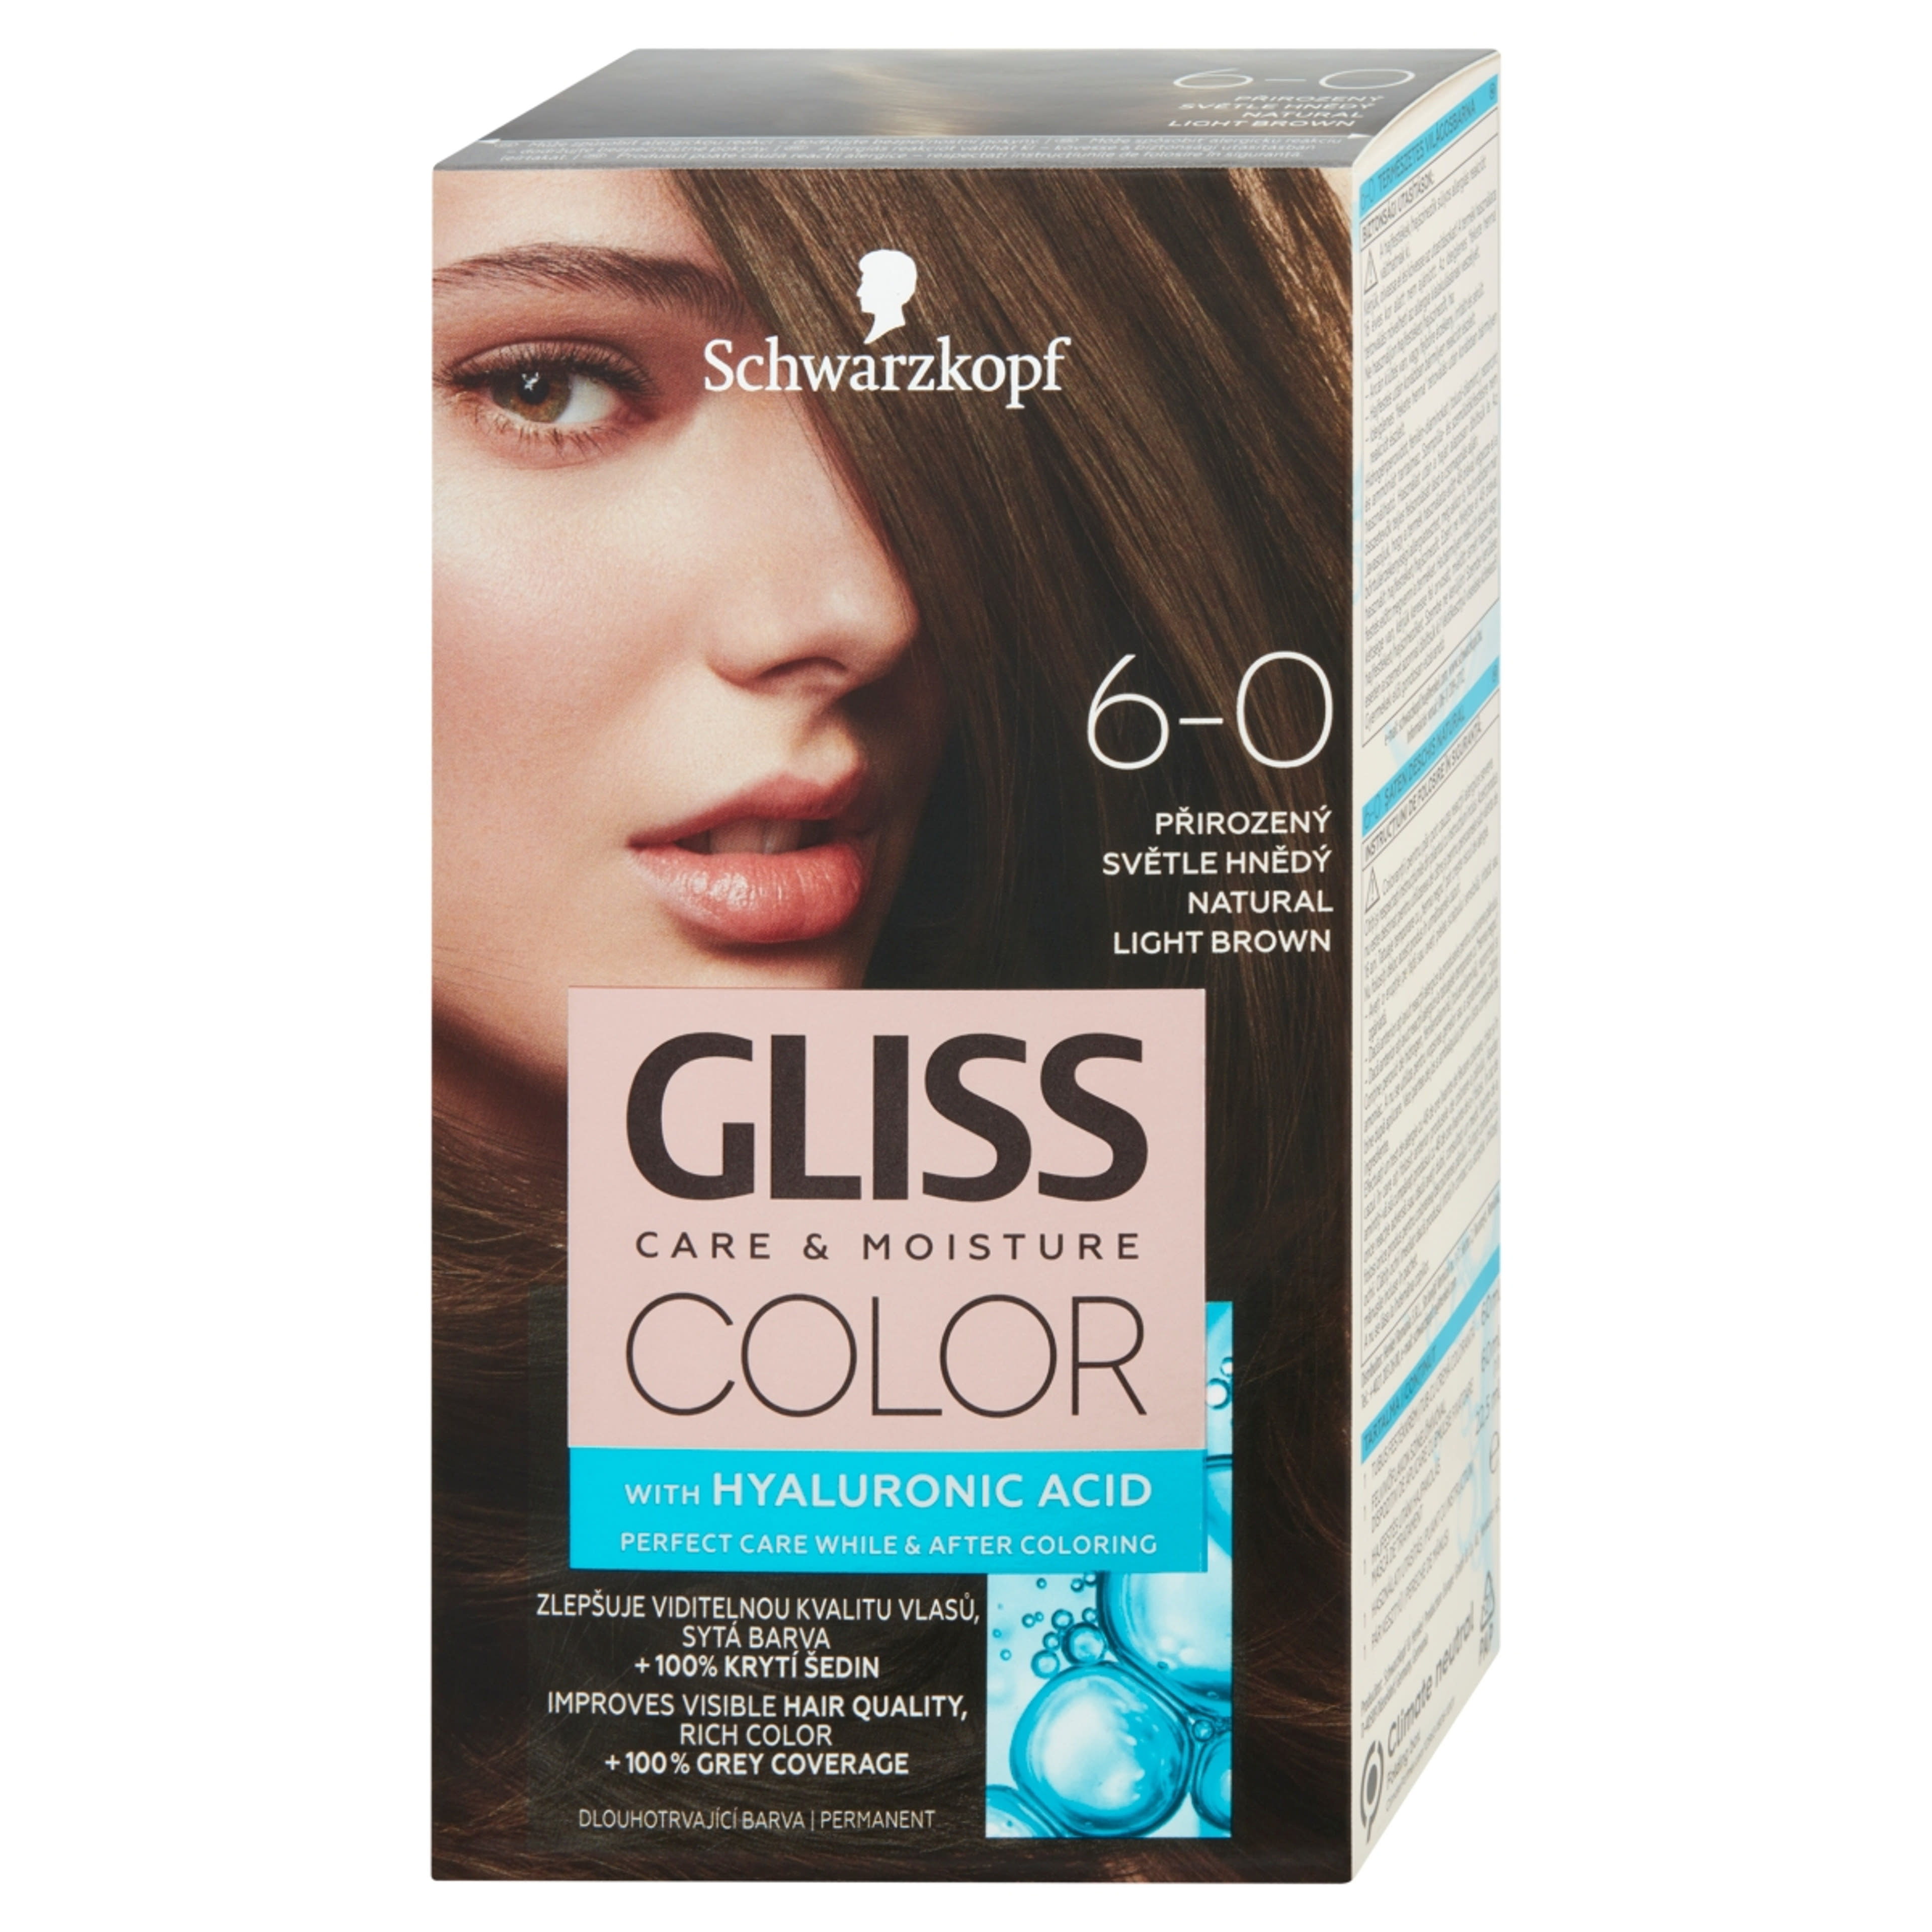 Gliss Color tartós hajfesték 6-0 Természetes világosbarna - 1 db-3